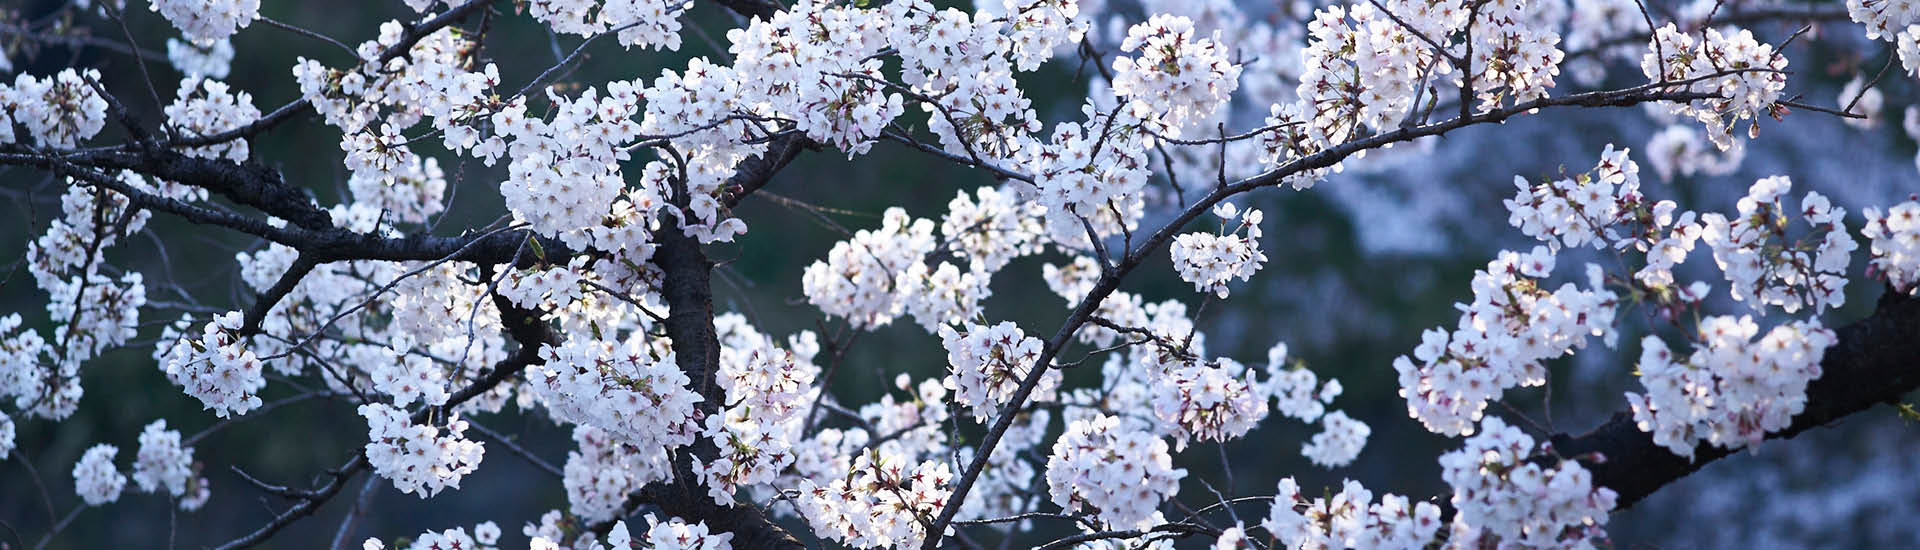 Folhas de Sakura da cor lilás em galhos finos